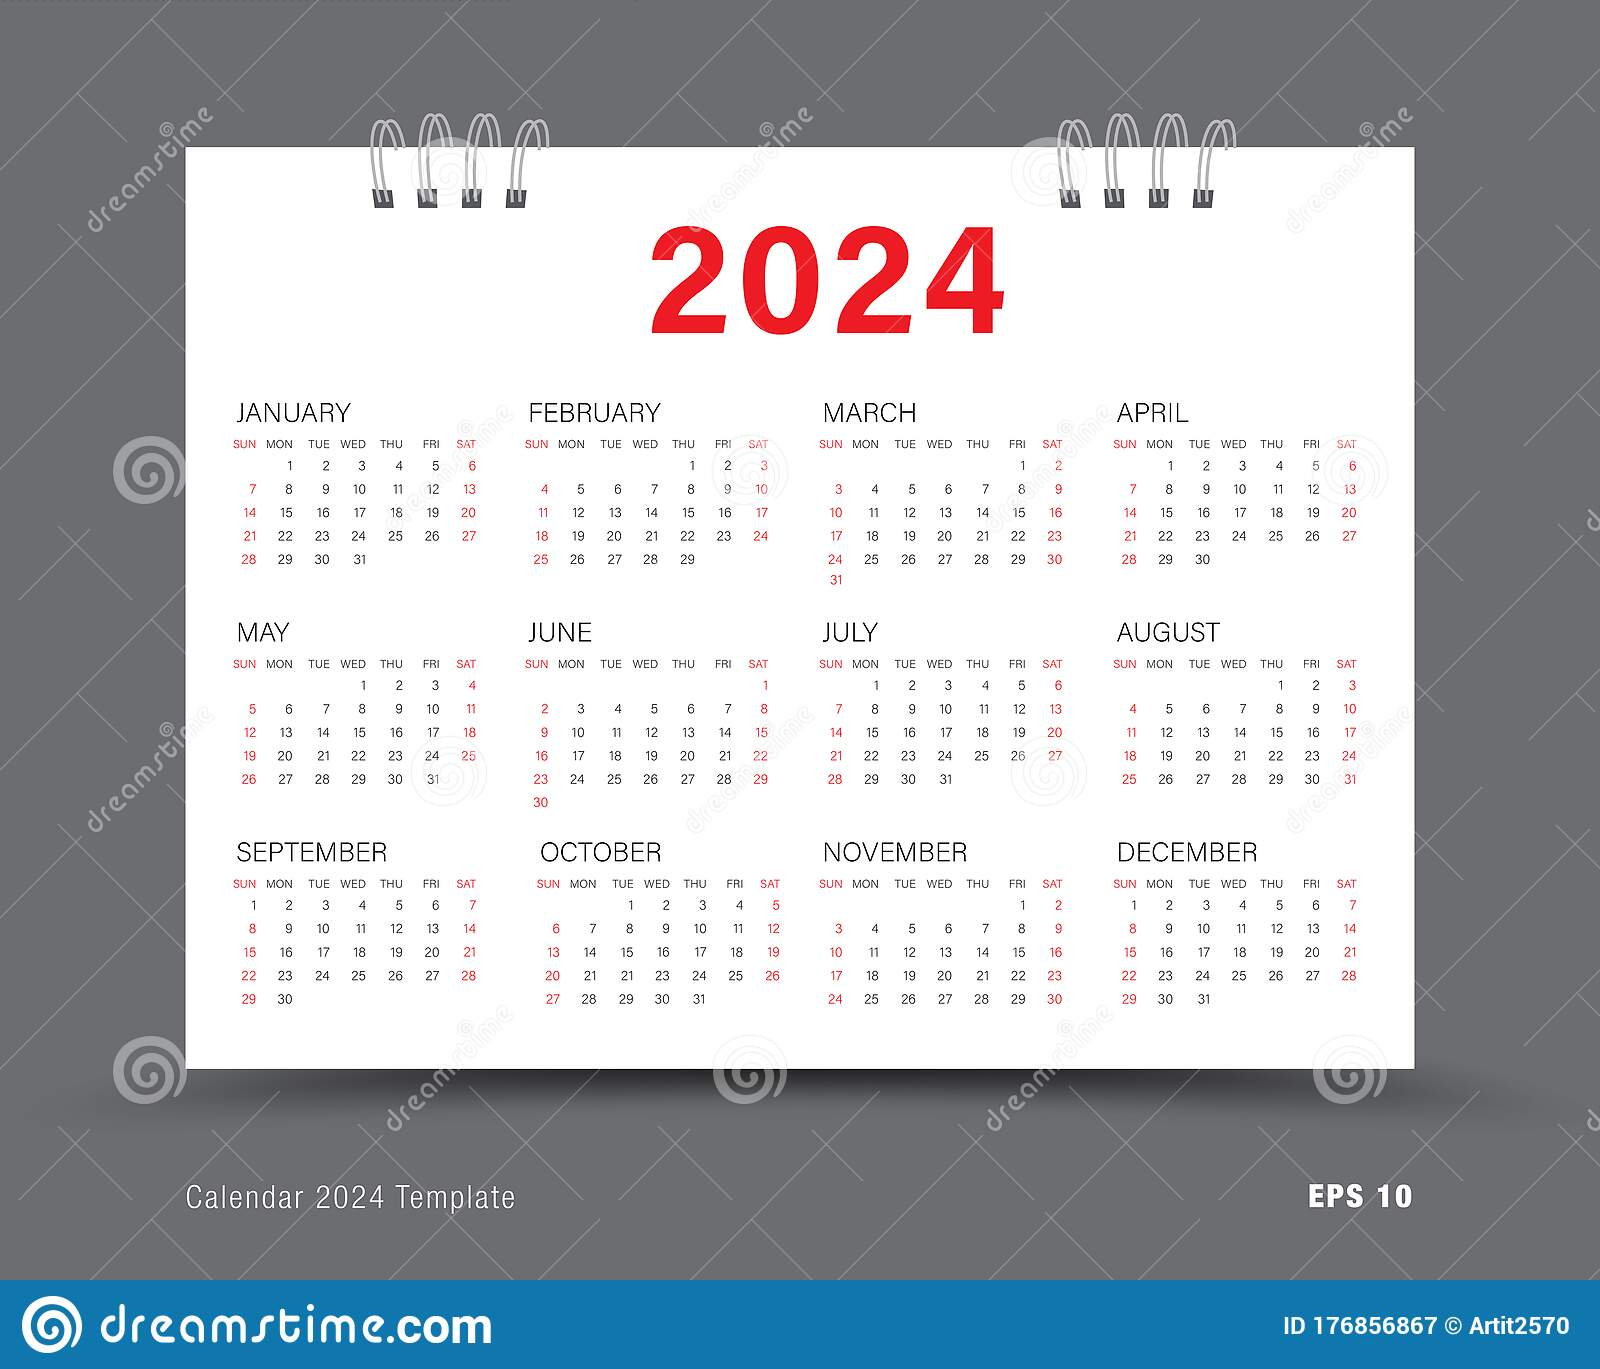 waterproof paper calendar january 2024 anita breanne waterproof